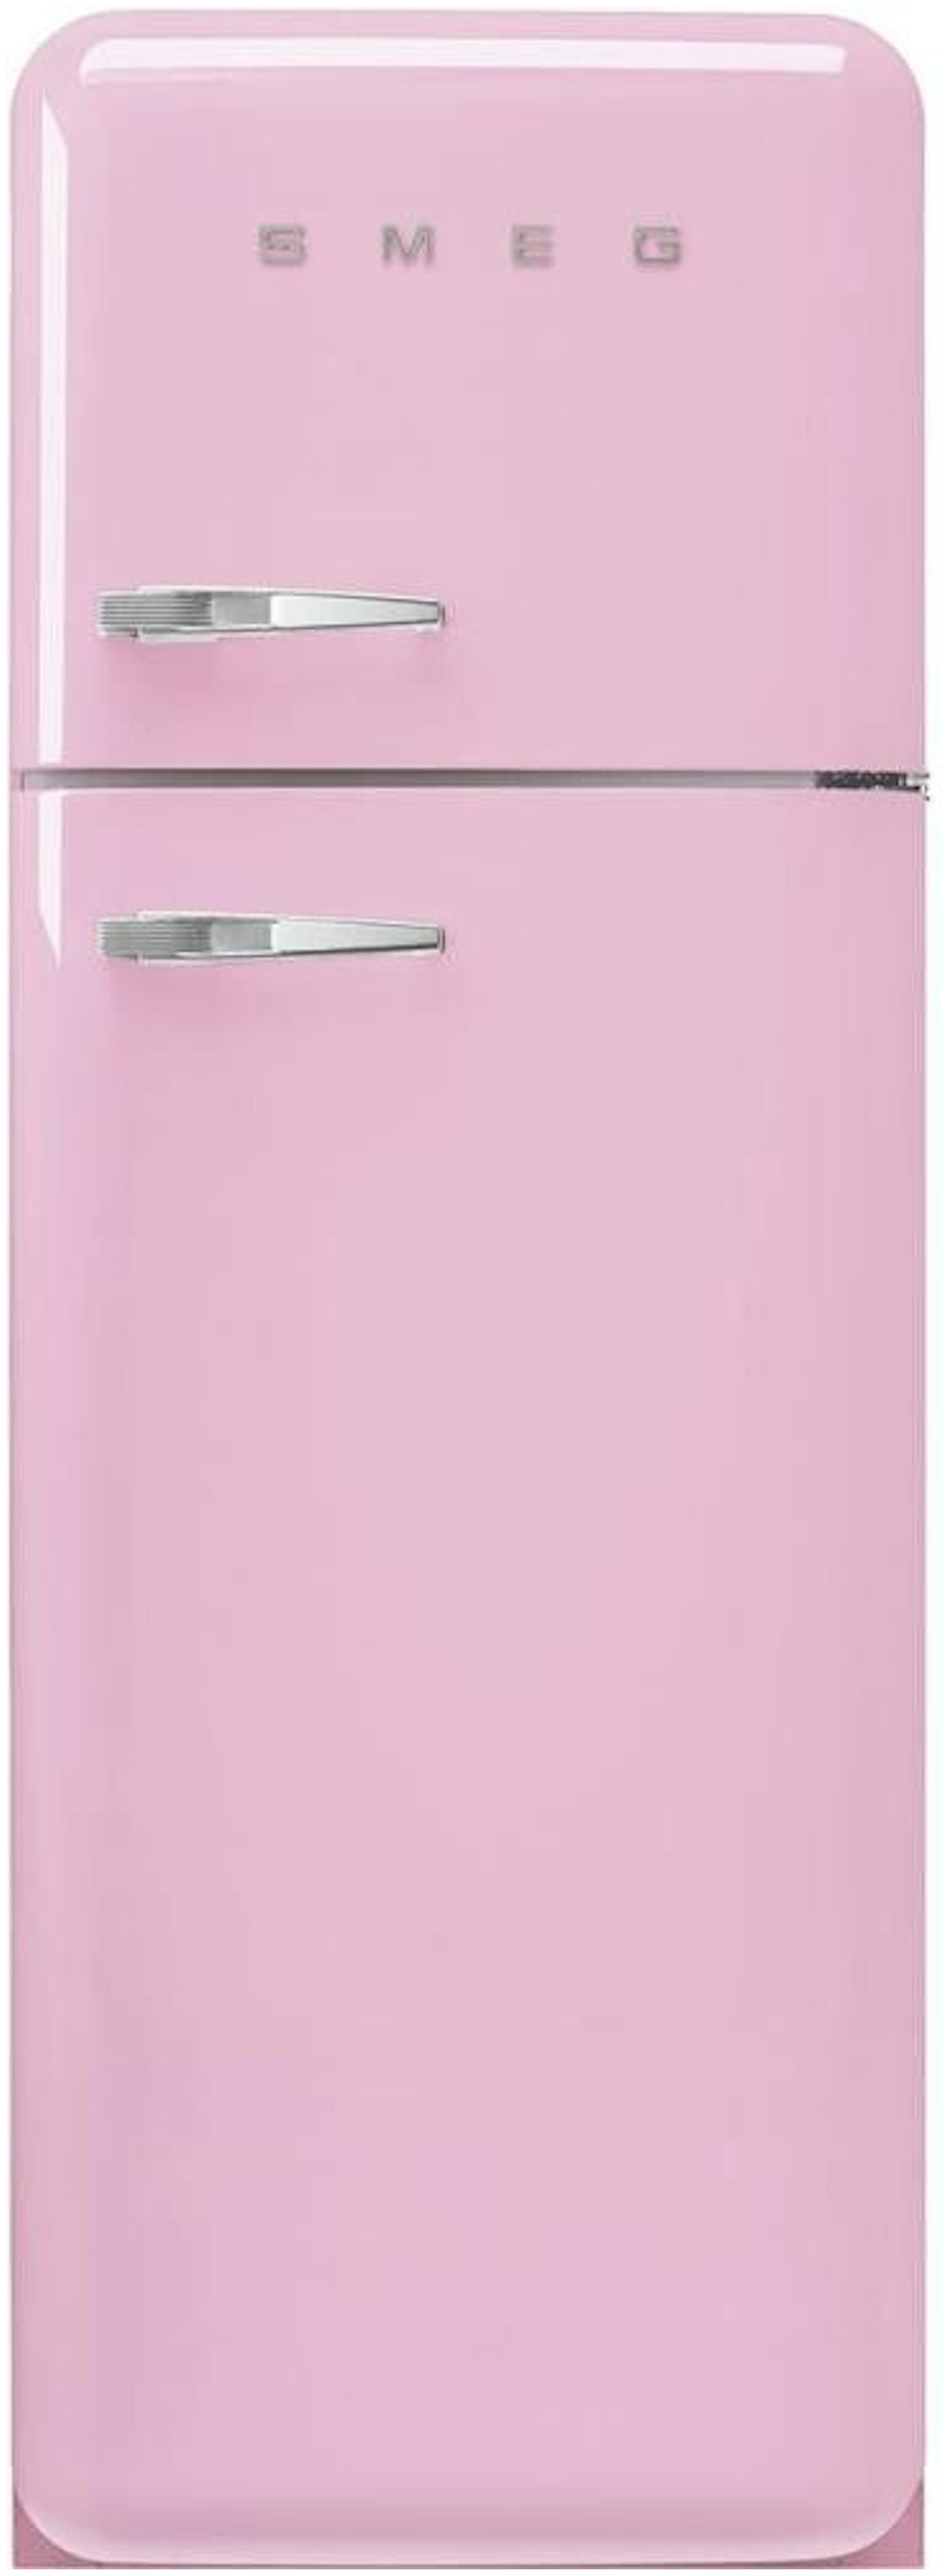 Roze koelkast koelkasten in de kleur pastelroze!